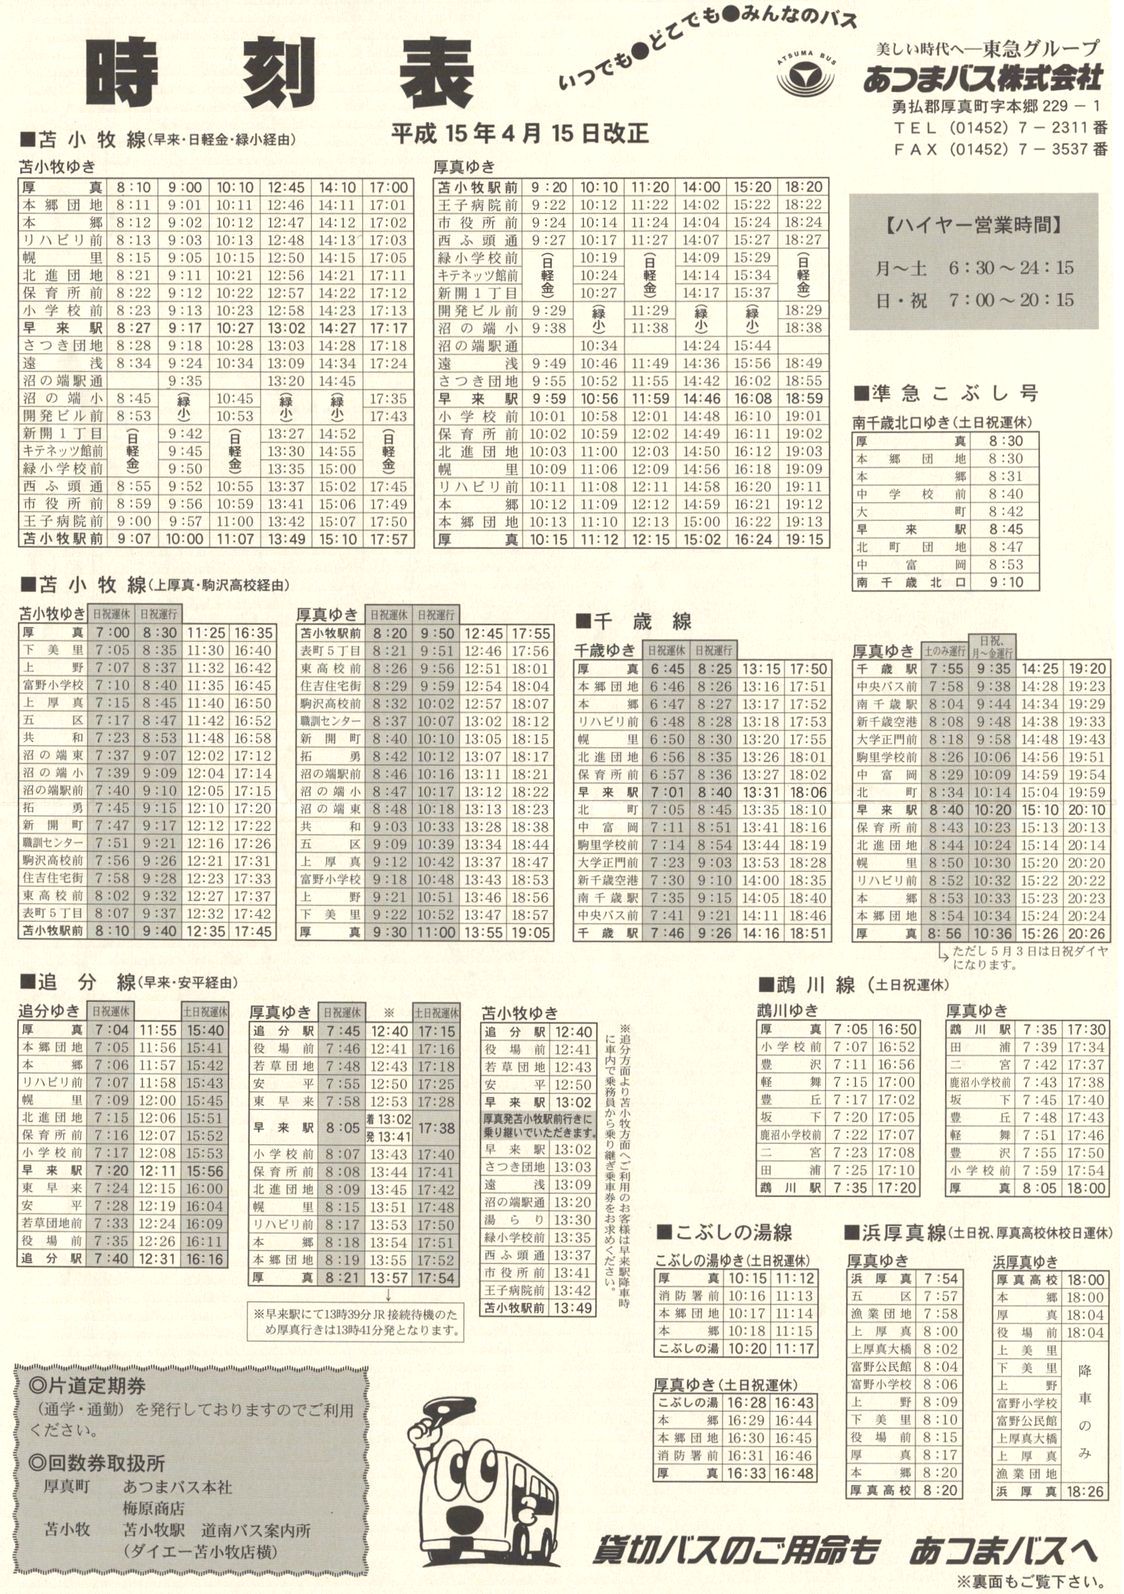 2003-04-15改正_あつまバス_時刻表表面